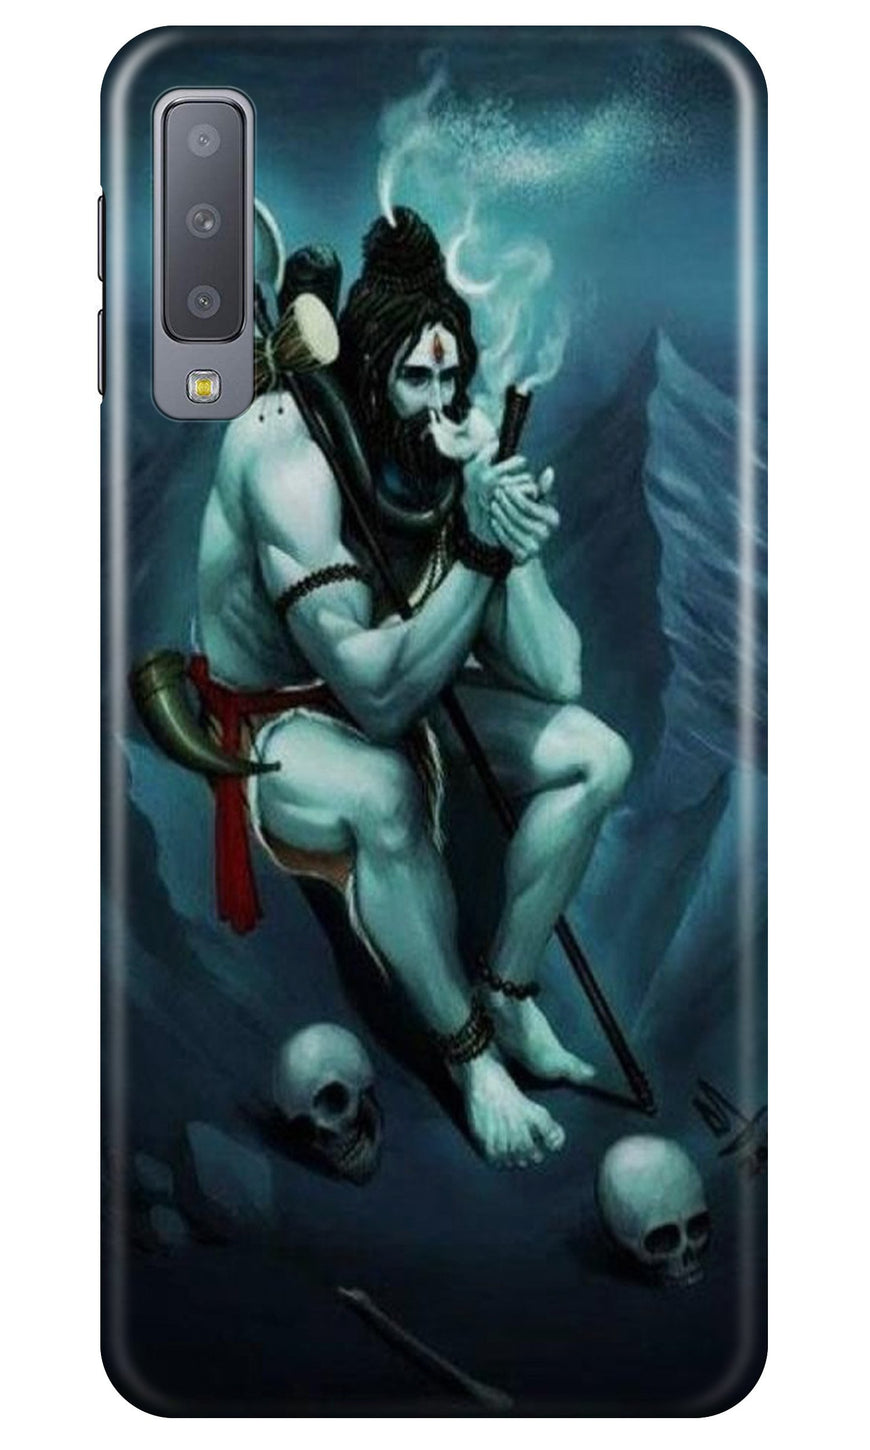 Lord Shiva Mahakal  Case for Galaxy A7 (2018)